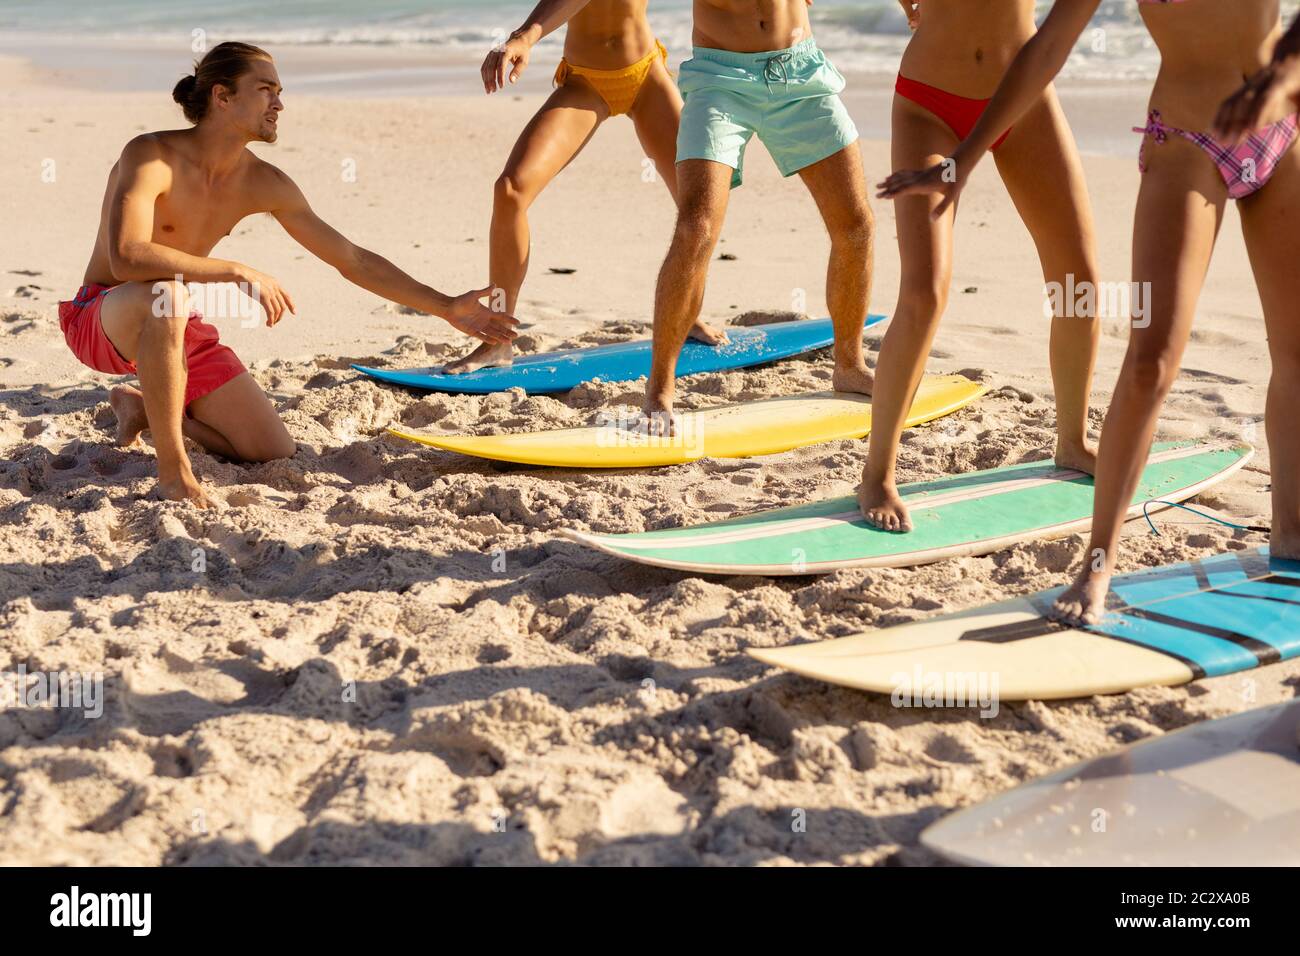 Groupe multiethnique de hommes et de femmes, surf sur la plage Banque D'Images